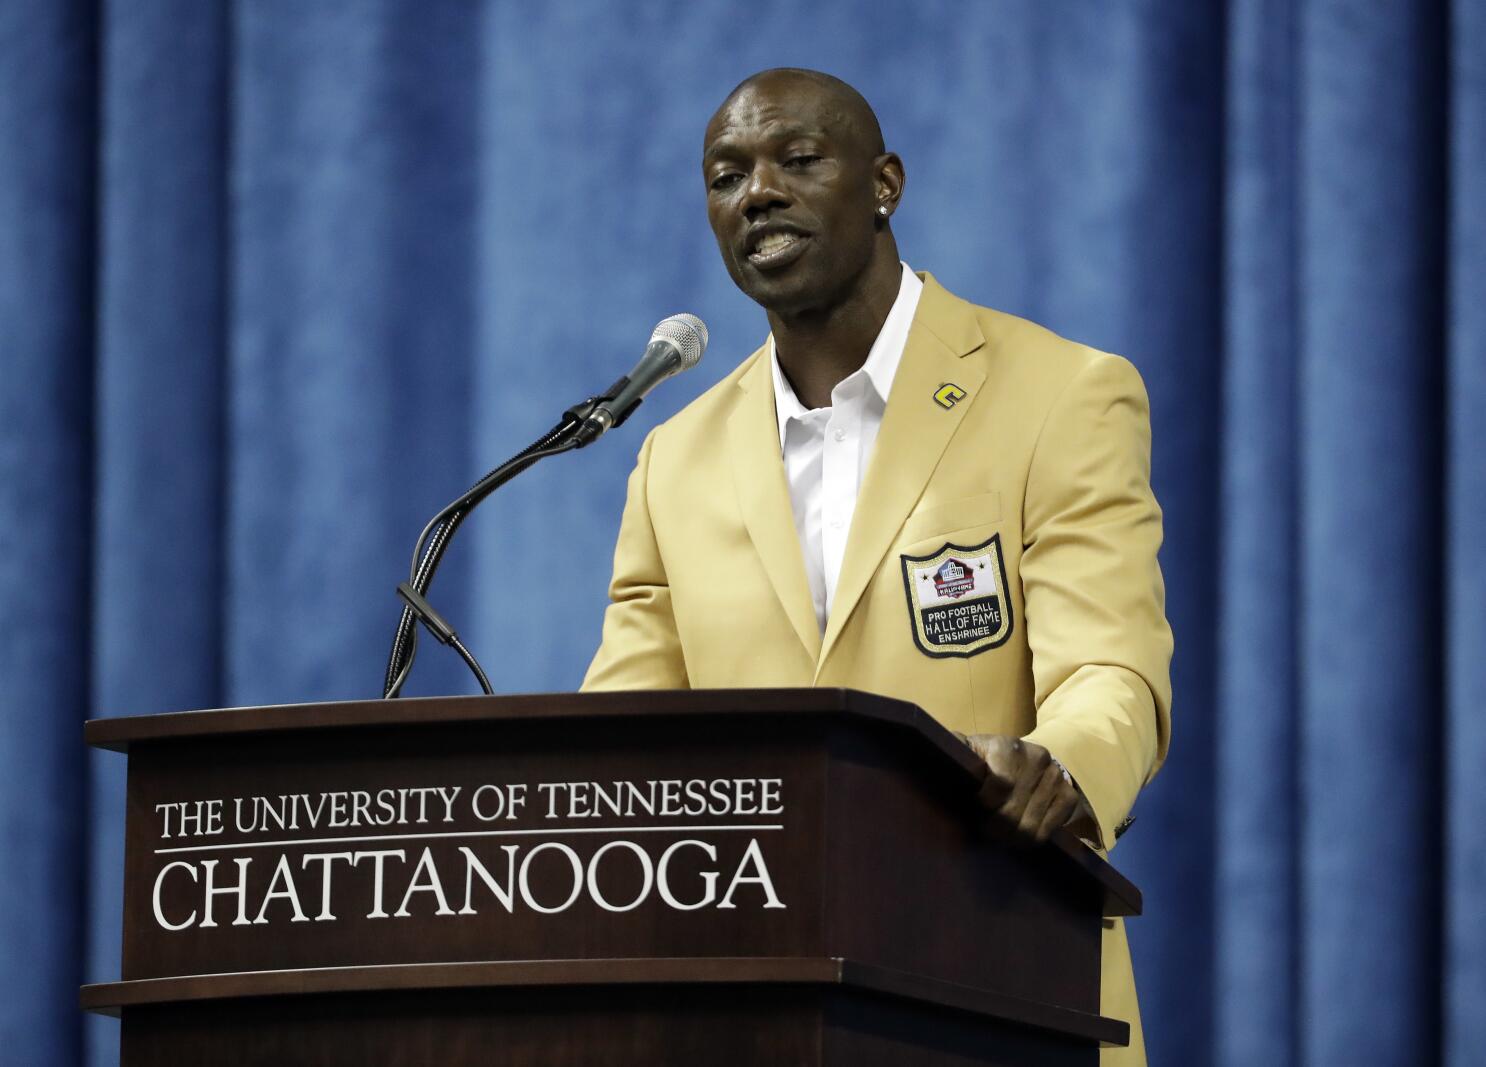 NFL Hall of Famer focused on better life for local children